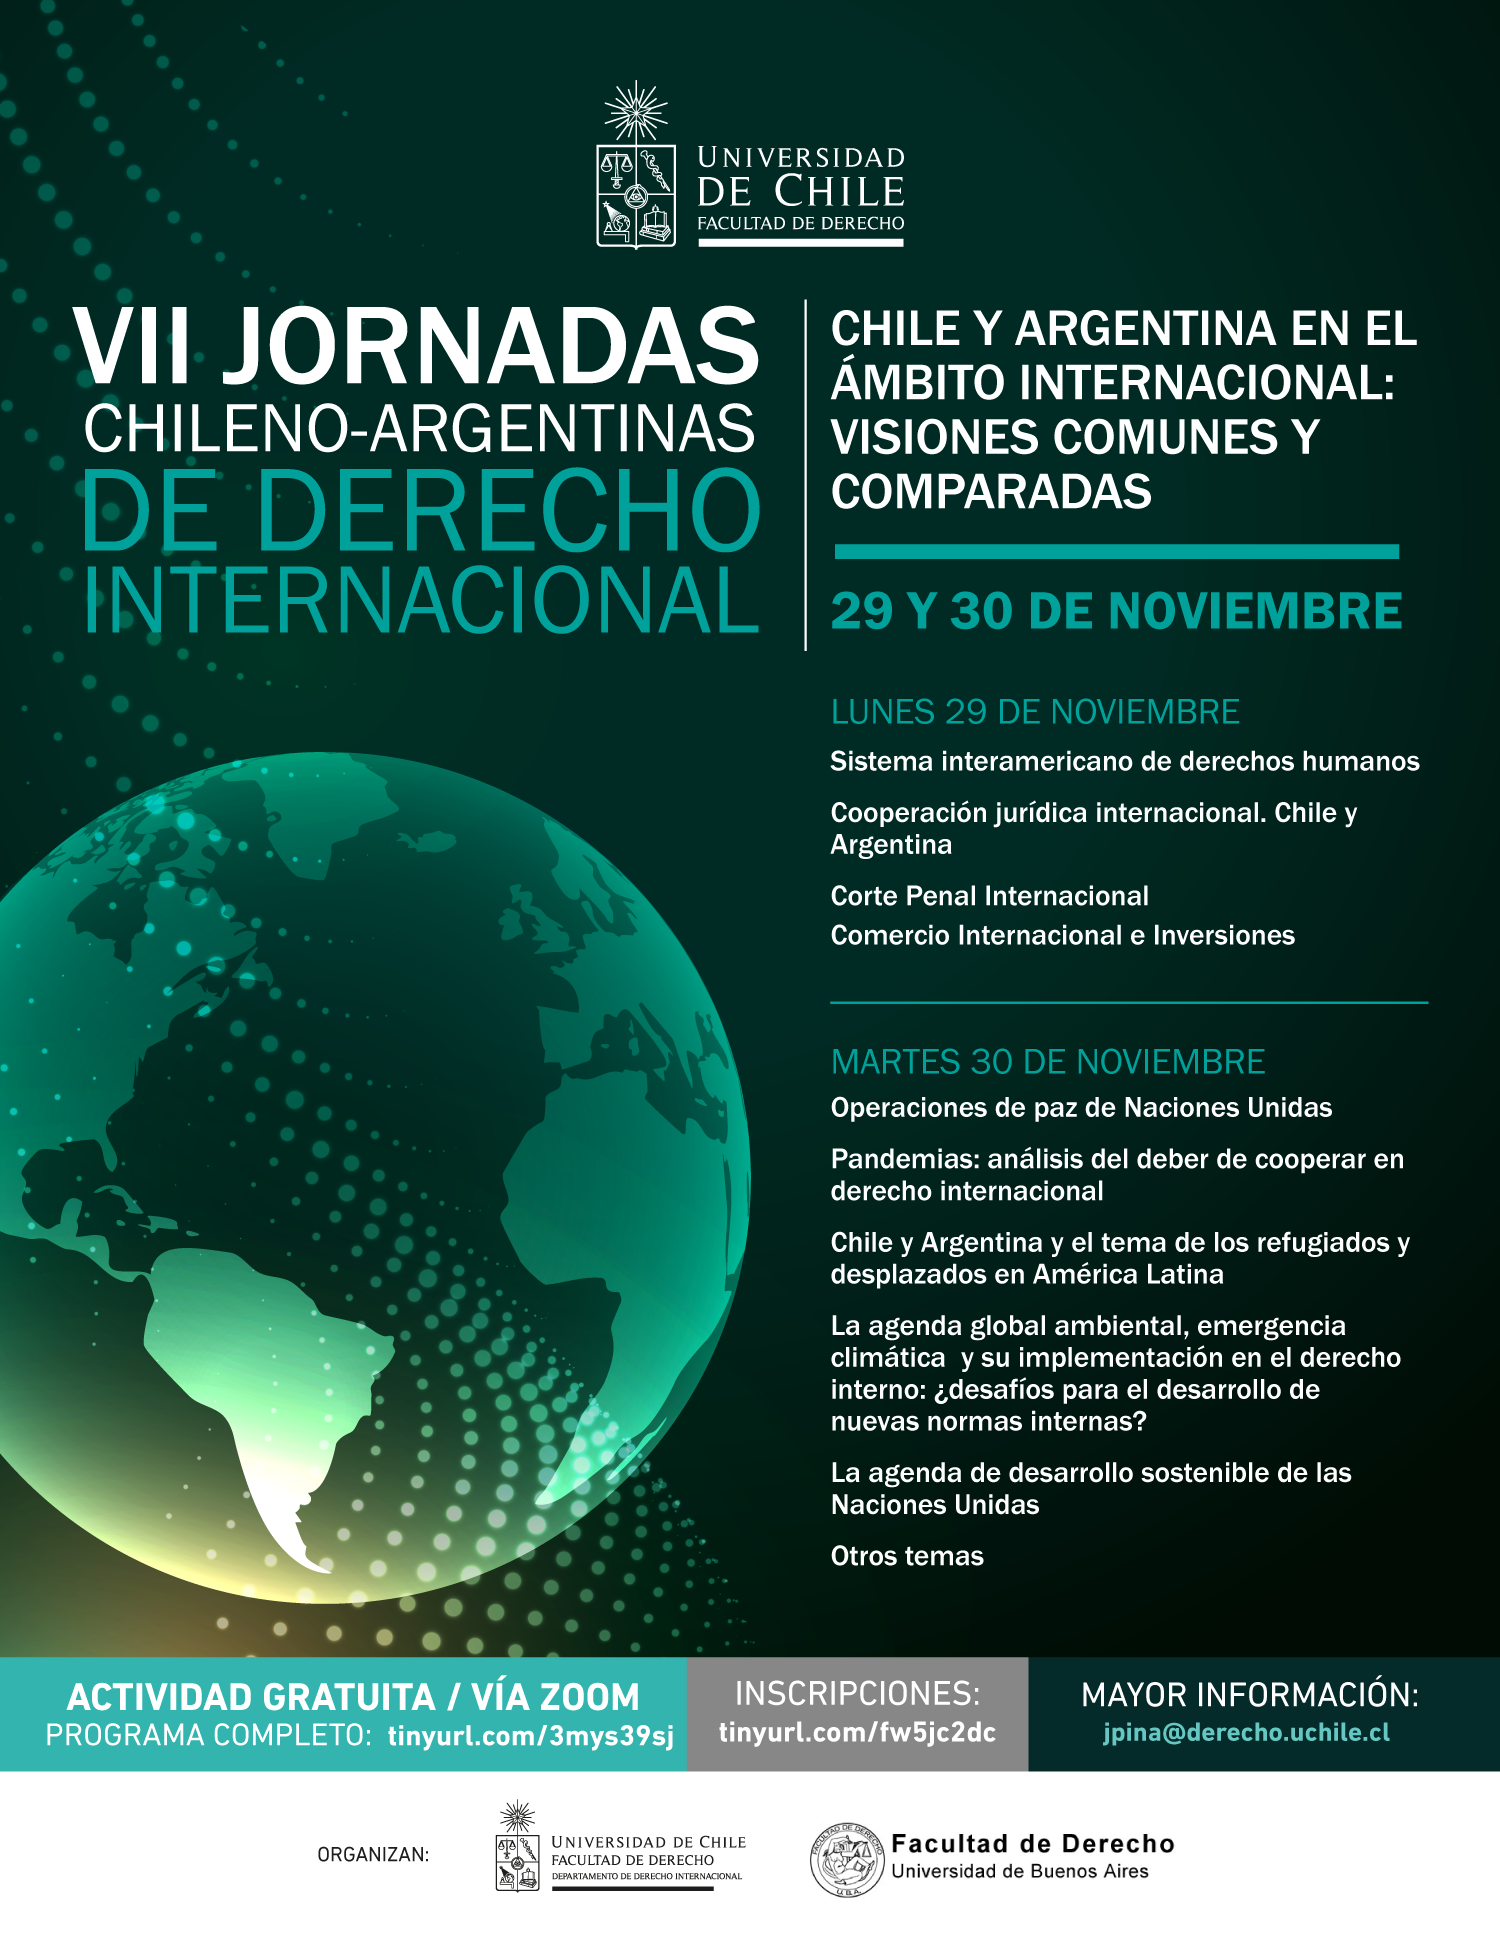 VII Jornadas Chileno-Argentinas de Derecho Internacional. 29 y 30 de Noviembre 2021